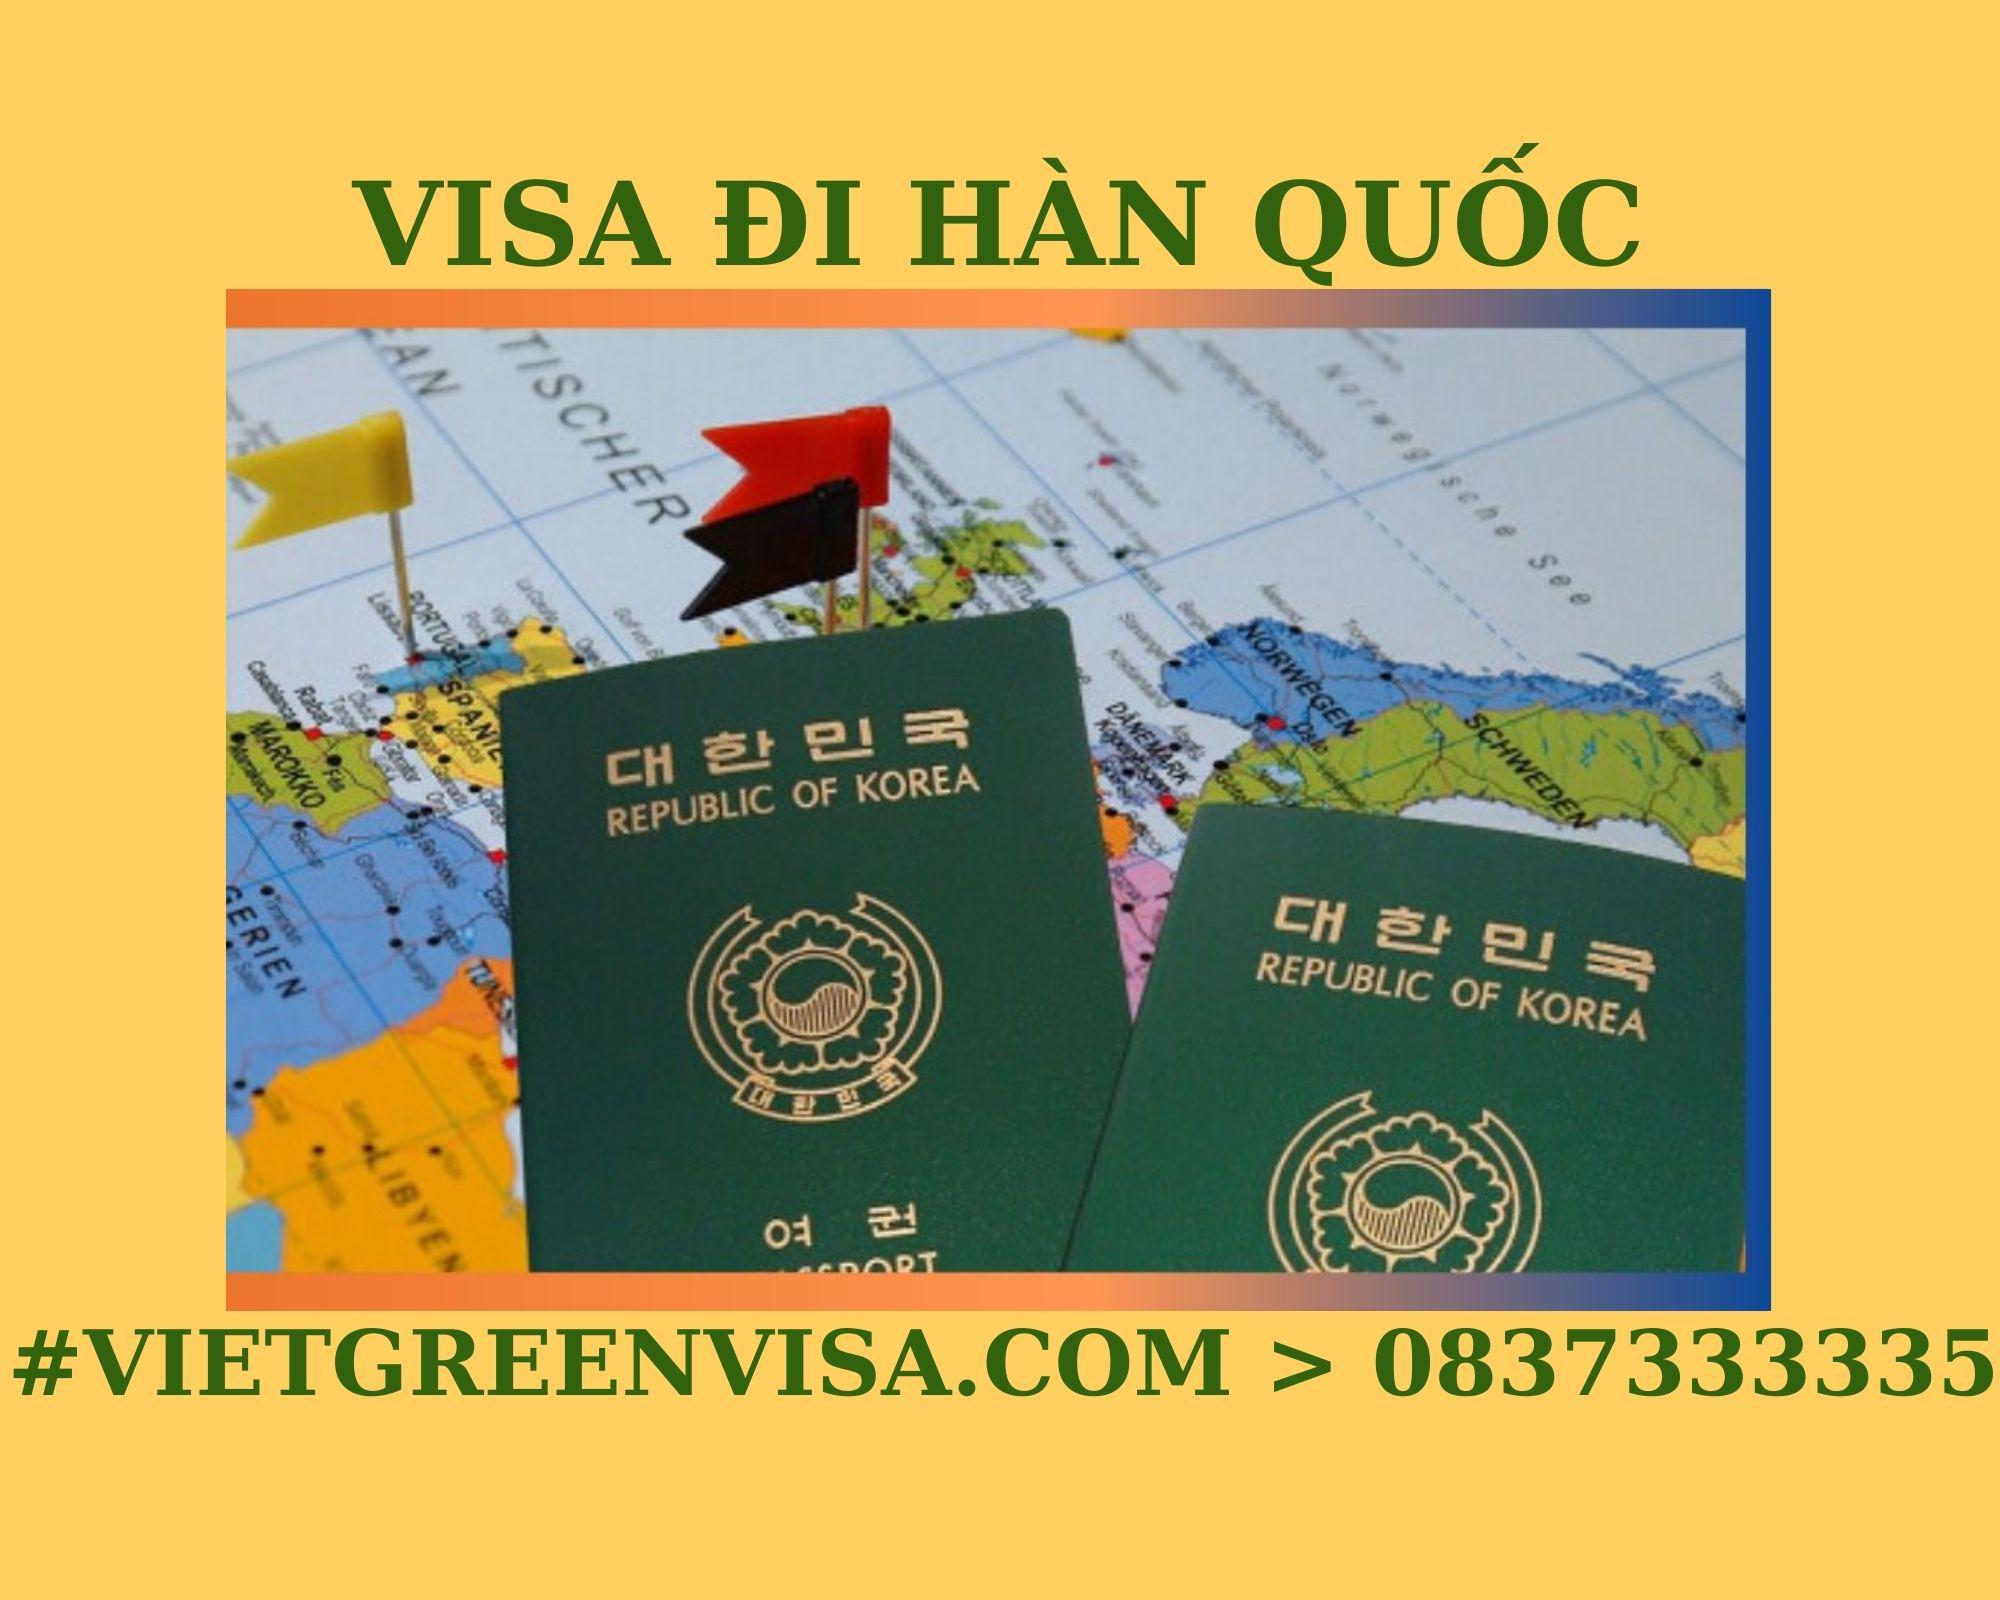 Dịch vụ xin Visa Hàn Quốc du lịch uy tín, trọn gói